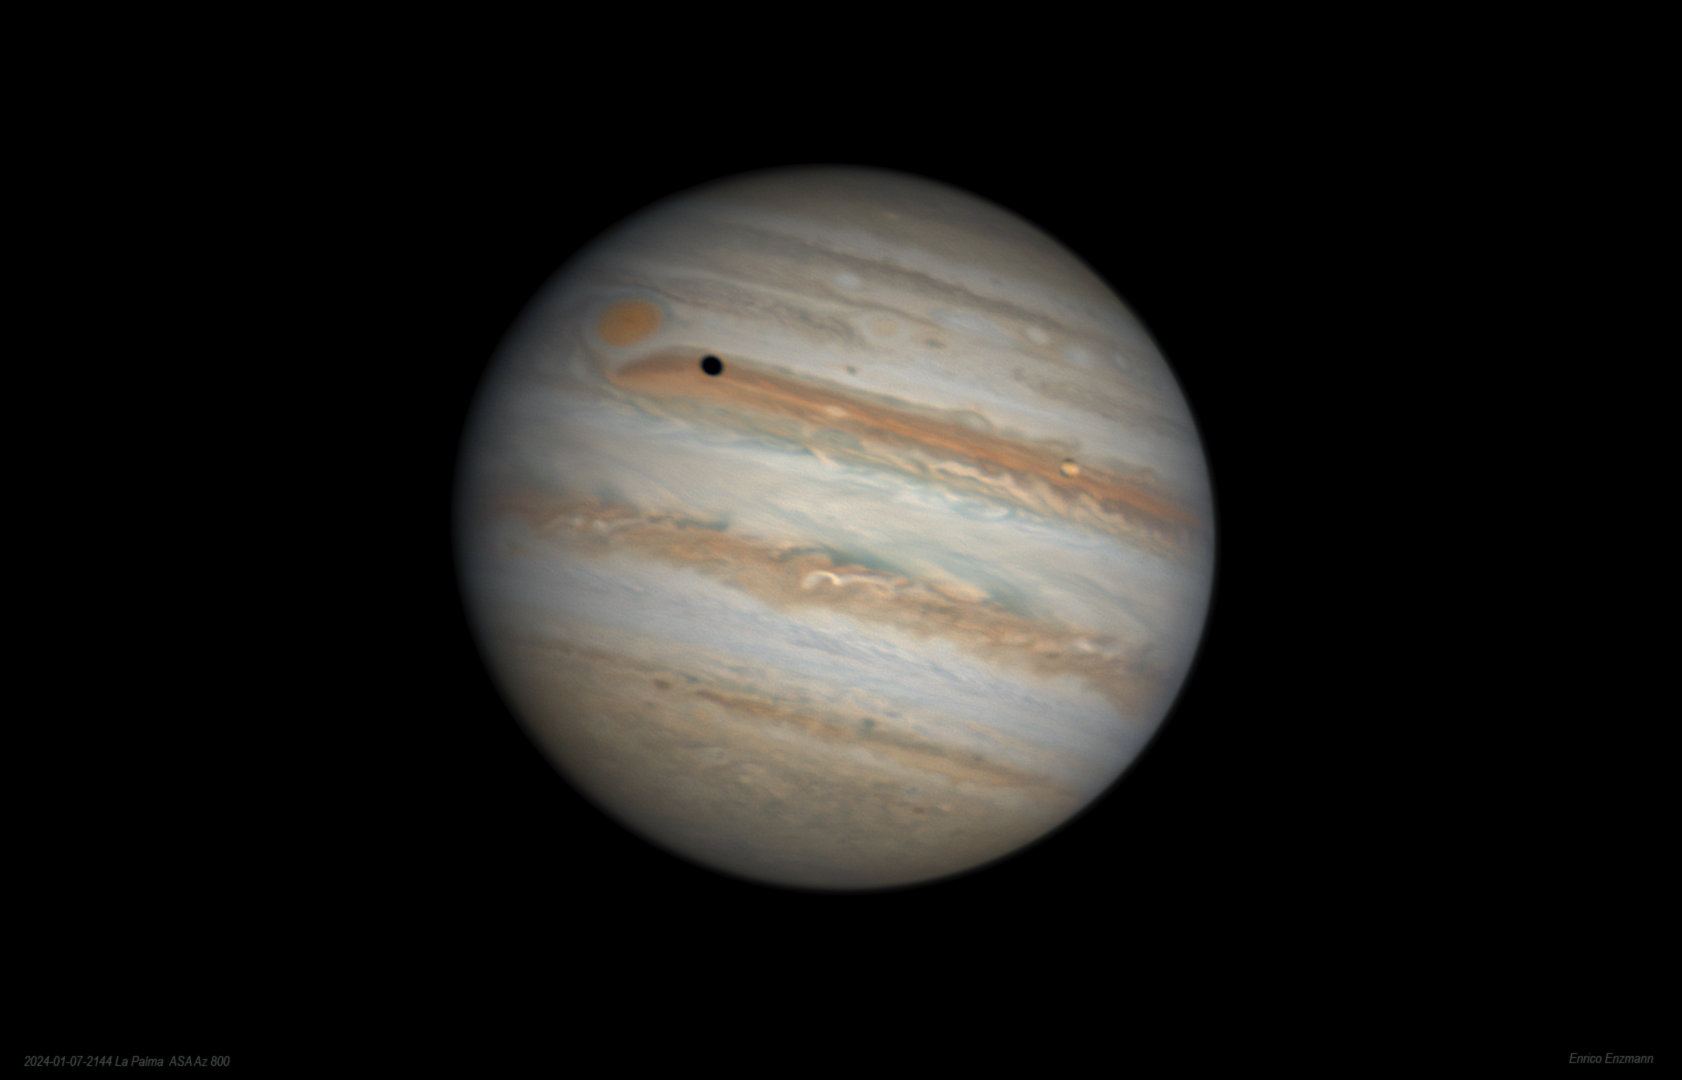 Knapp verpasst: Schatten von Jupitermond Io